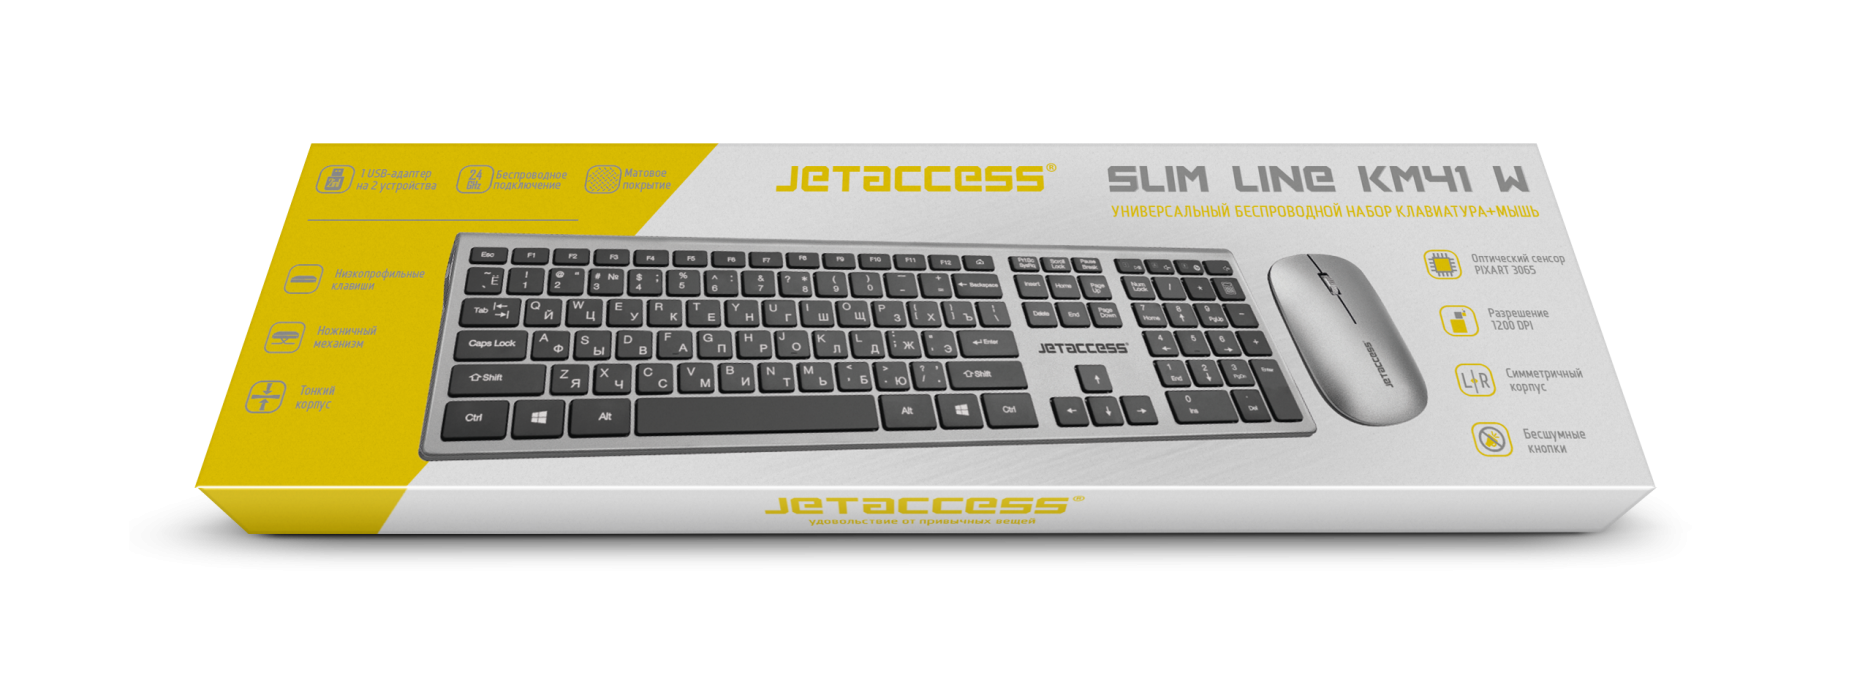 Универсальный беспроводной набор клавиатура + мышь SLIM LINE KM41 W1